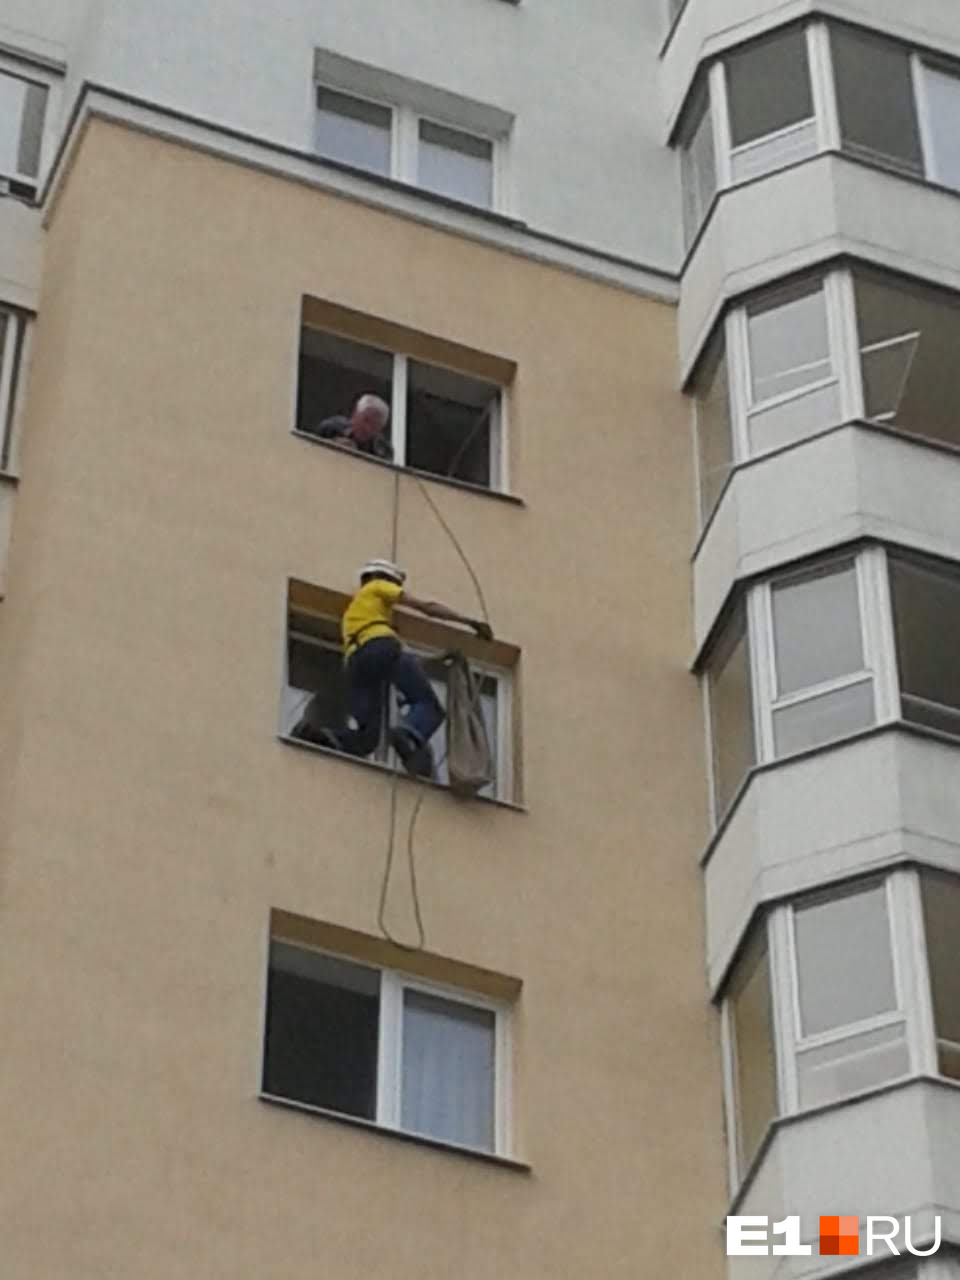 Житель с девятого этажа разрешил провести веревку через свое окно